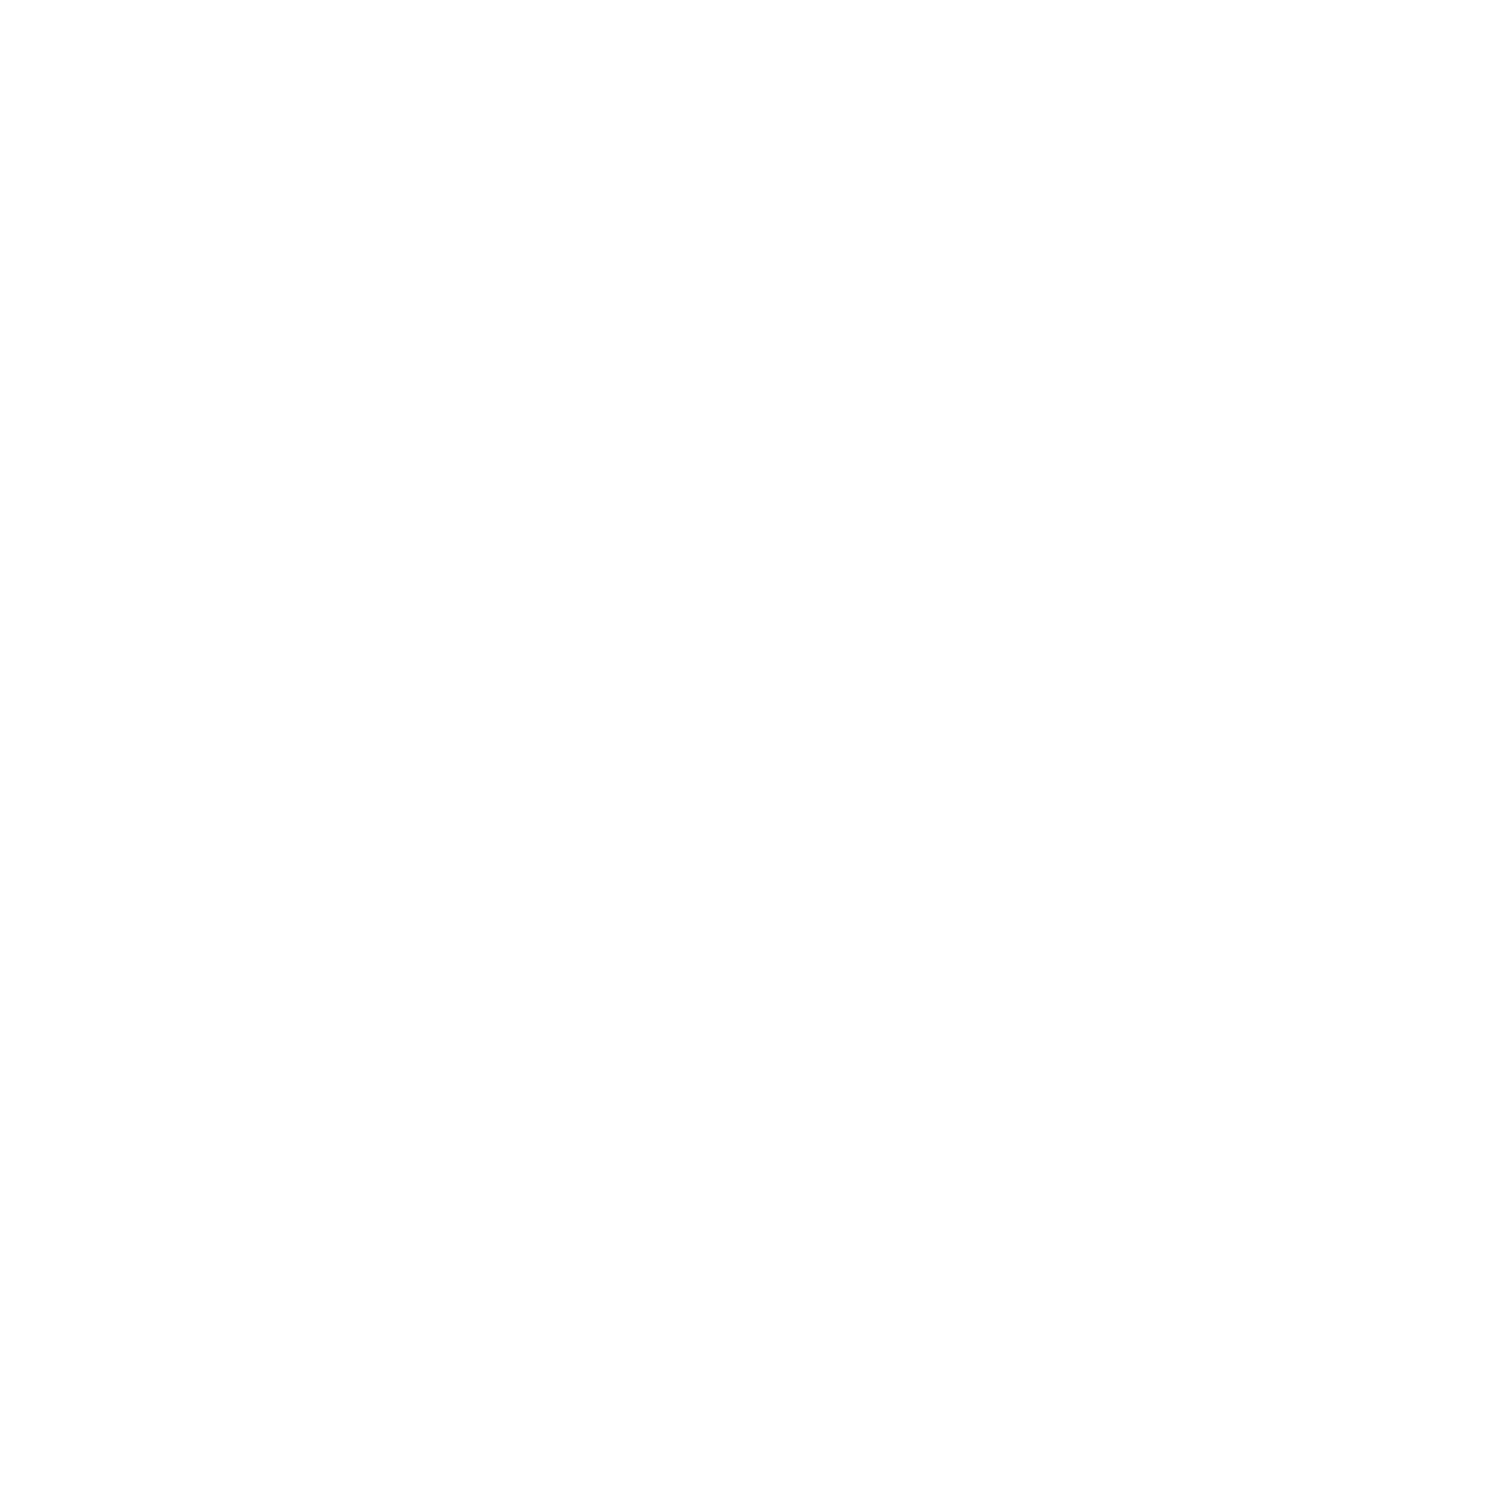 DK Industries